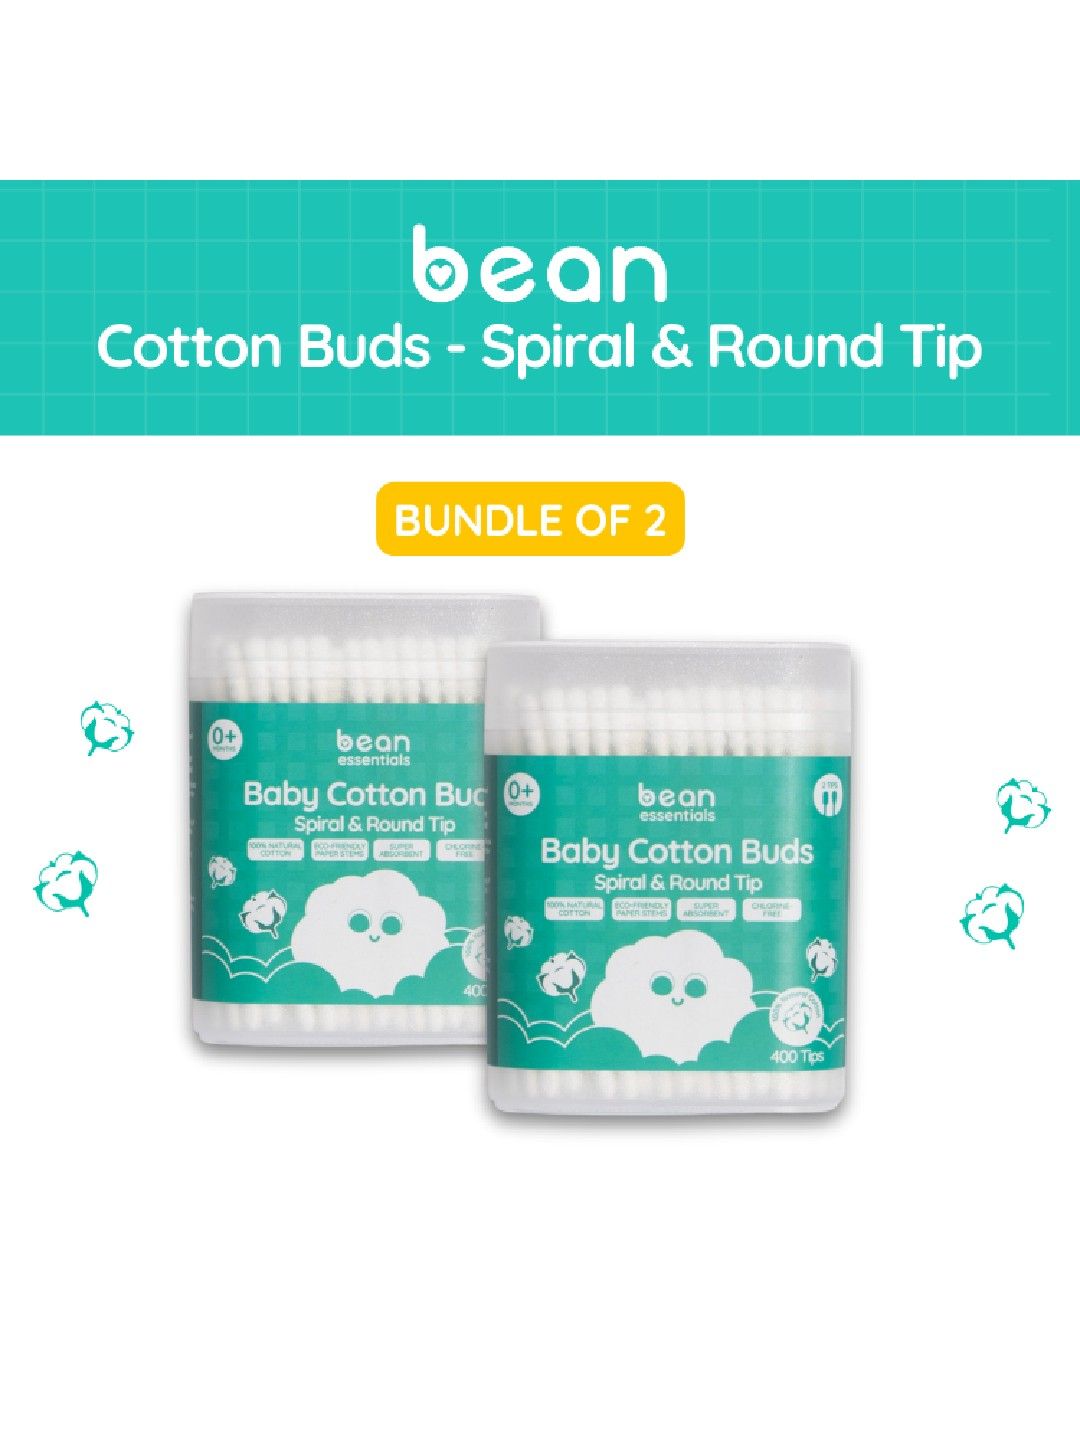 bean essentials [Bundle of 2] Spiral & Round Cotton Buds (400 tips) x 2